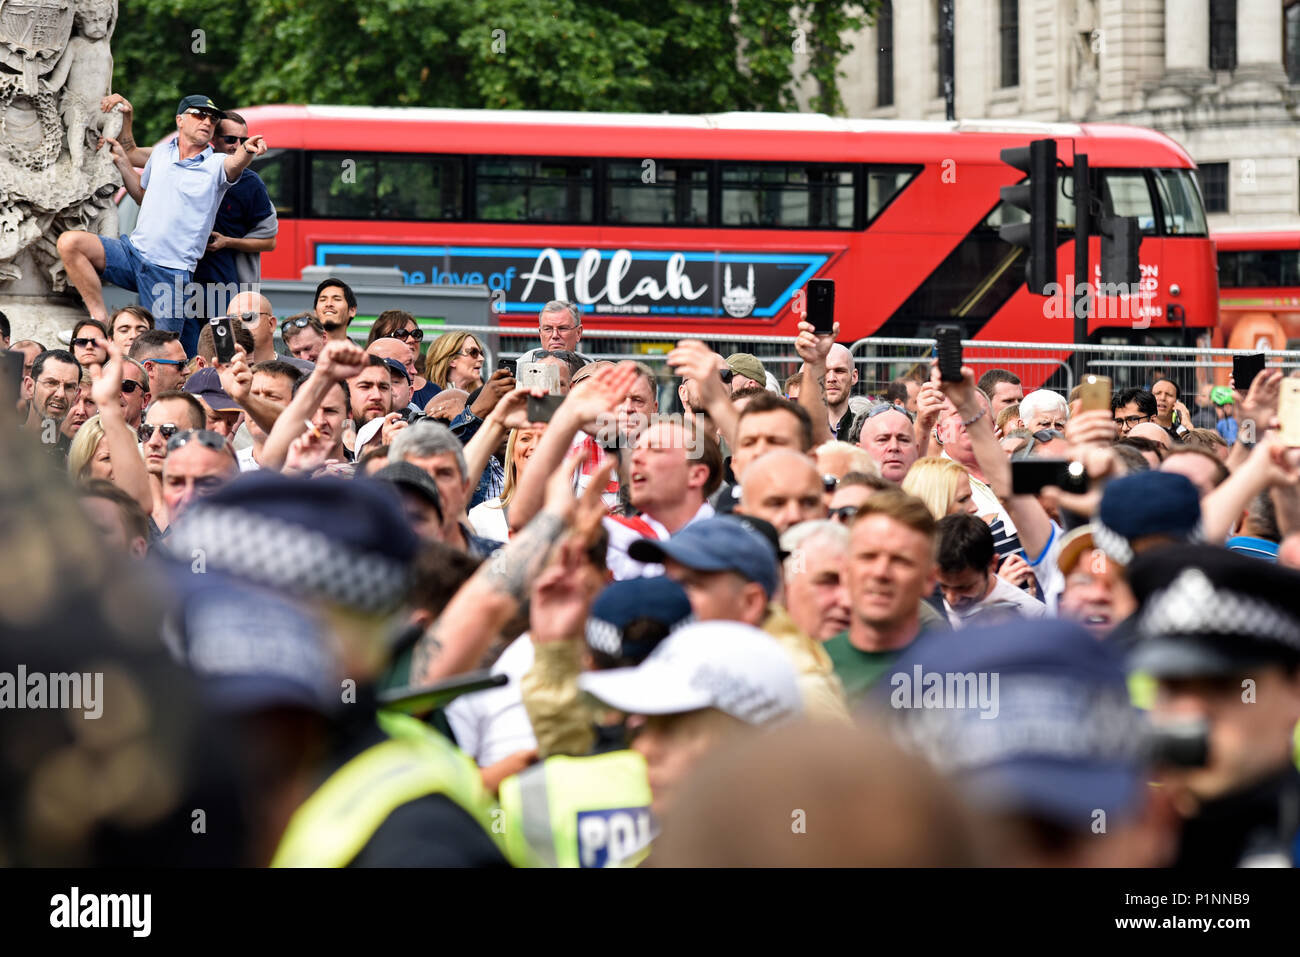 Ironie als Bus Werbung, Liebe zu Allah leitet EDL gegen muslimische Demonstration gegen über Verhaftung von Tommy Robinson. Ironische Stockfoto